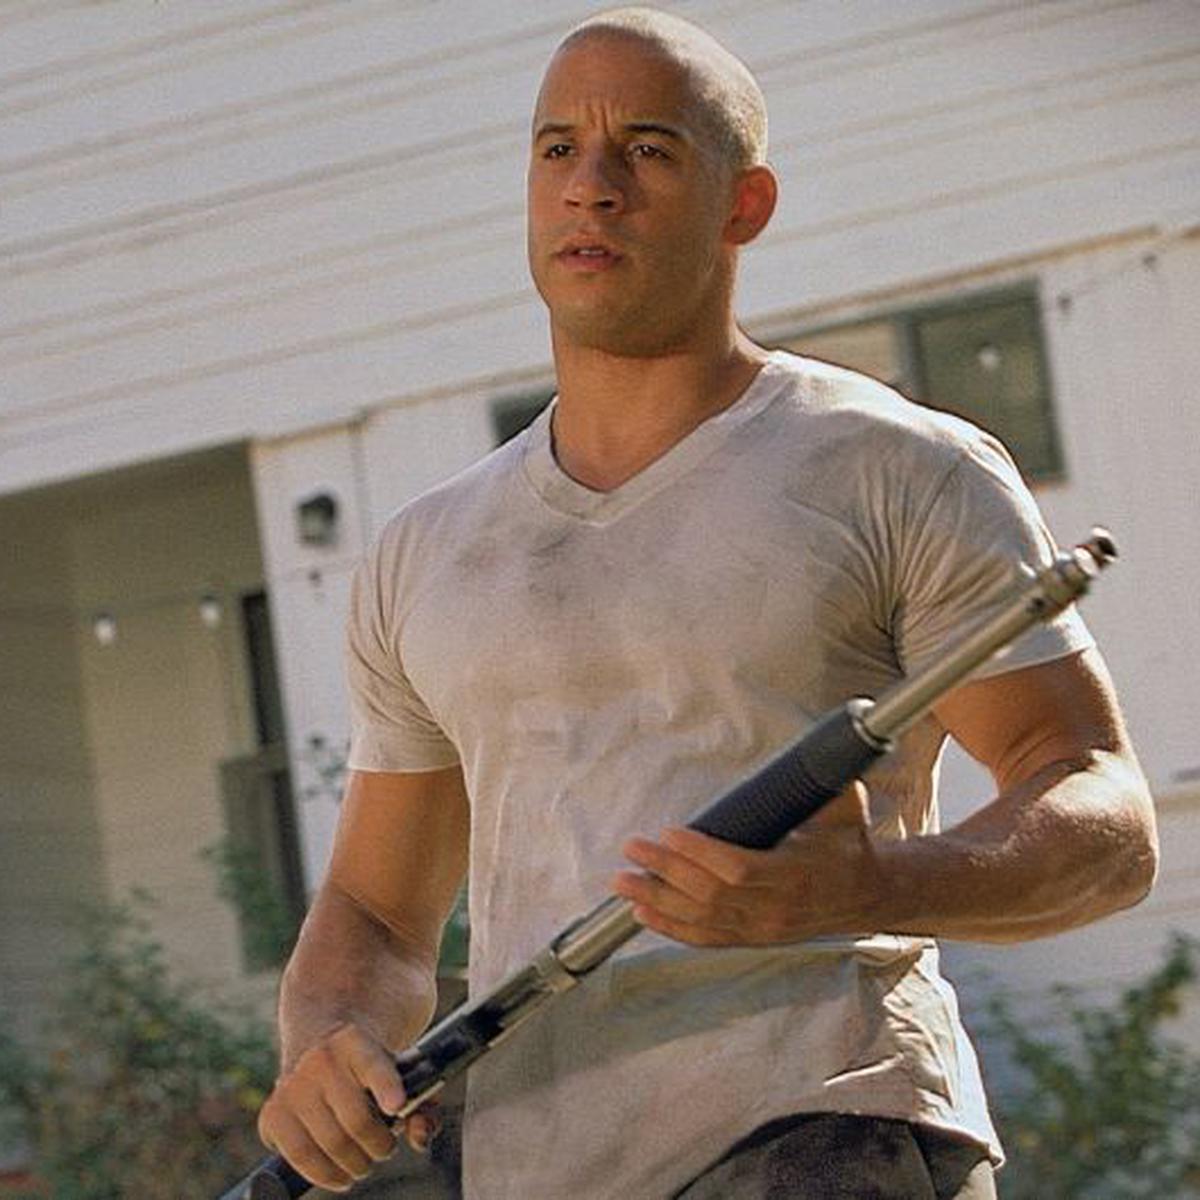 Rápidos y furiosos: preguntas y respuestas sobre Dominic Toretto, el  personaje de Vin Diesel | DEPOR-PLAY | DEPOR